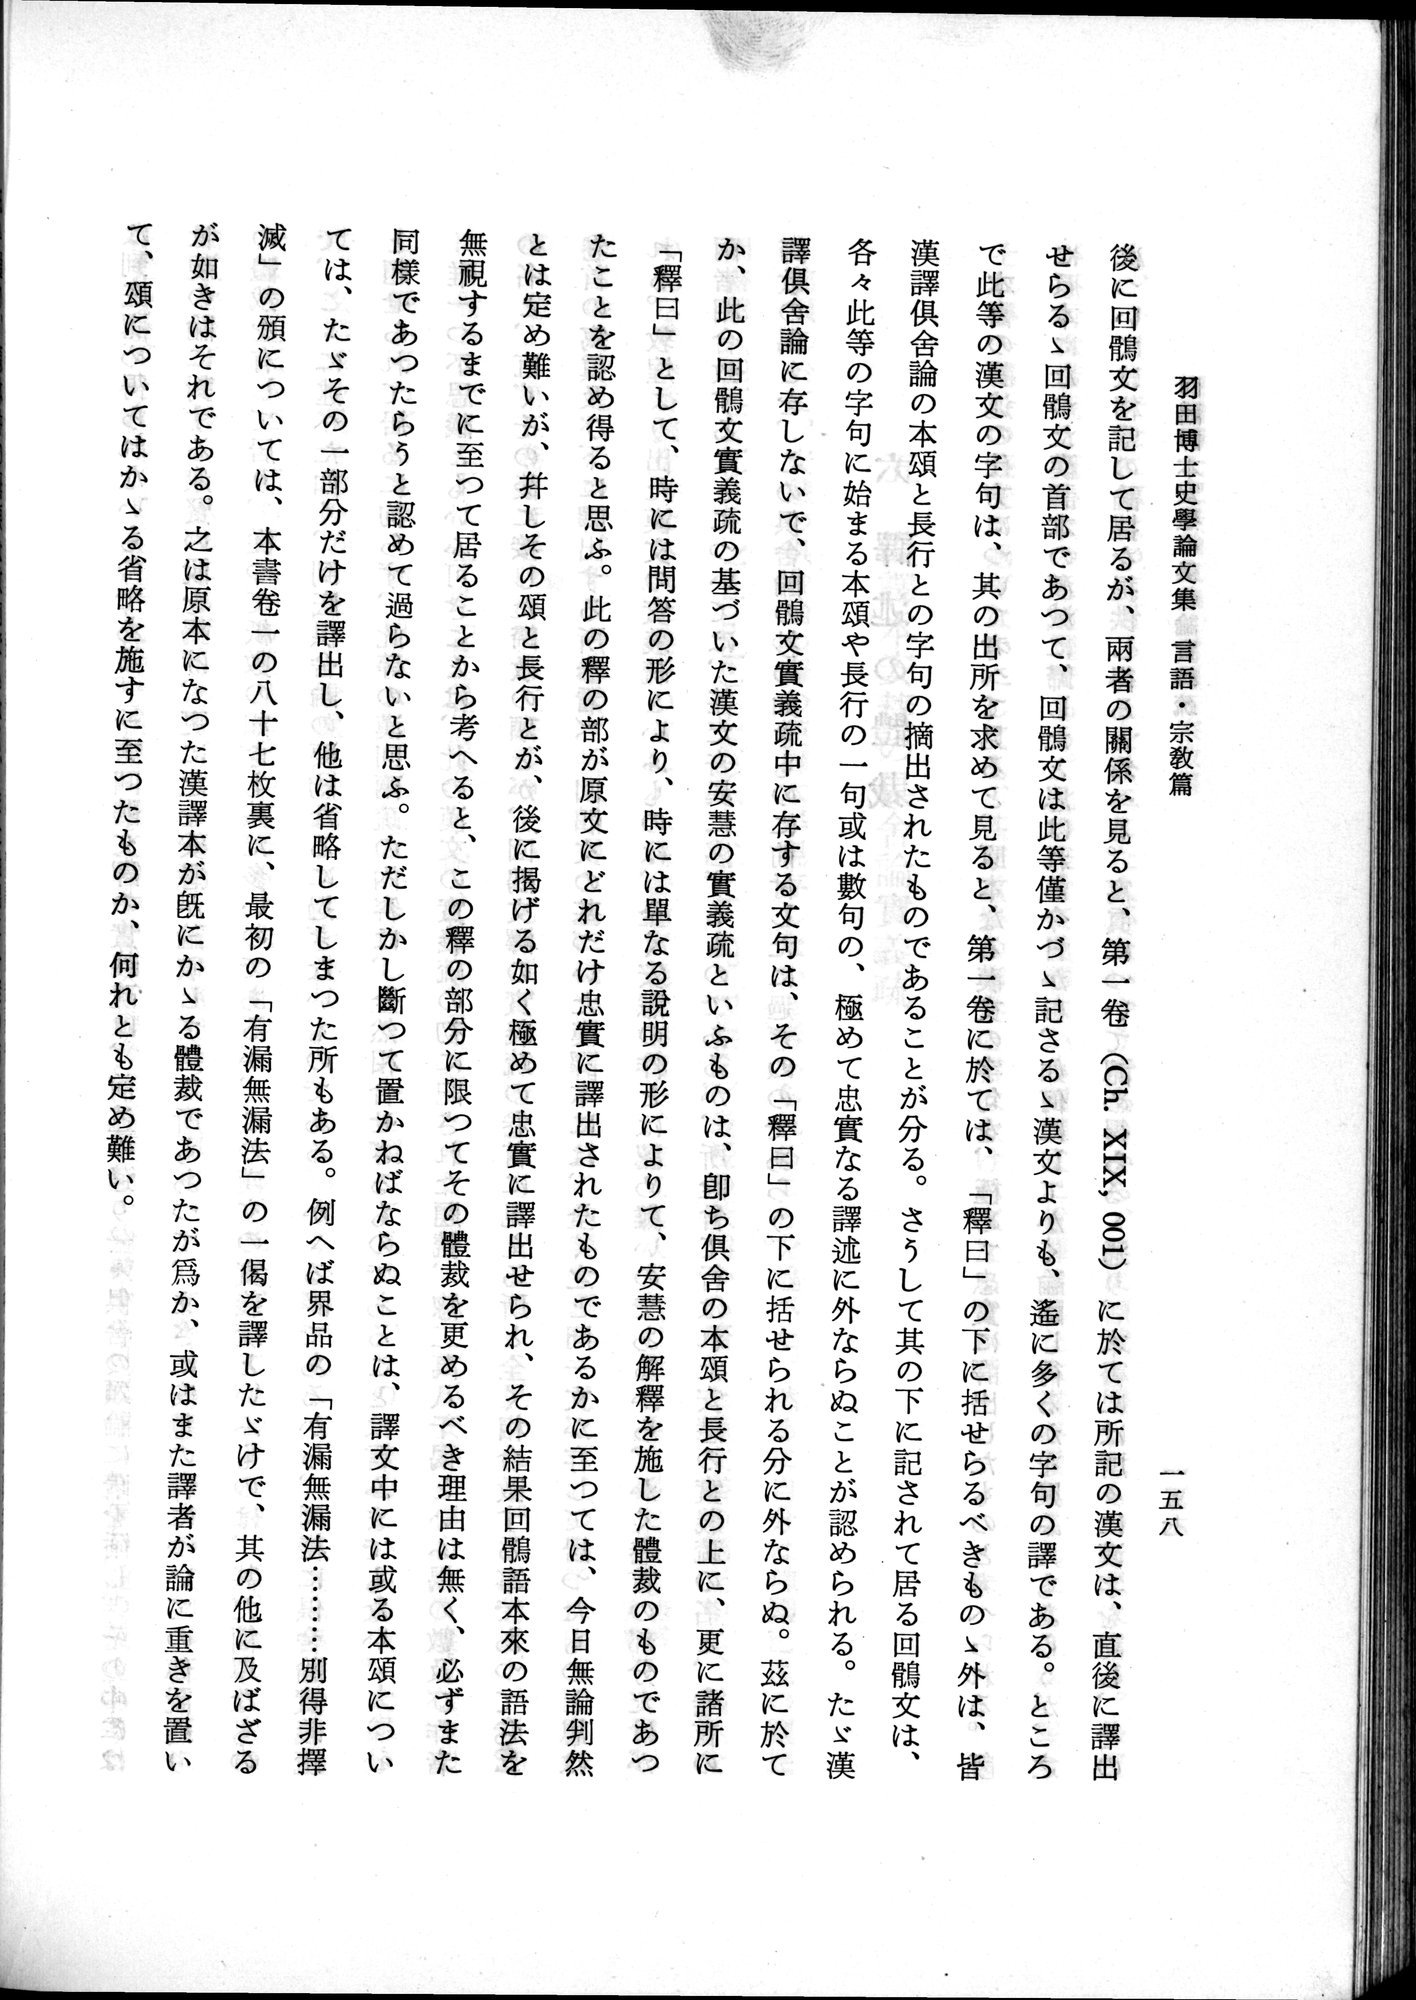 羽田博士史学論文集 : vol.2 / Page 220 (Grayscale High Resolution Image)